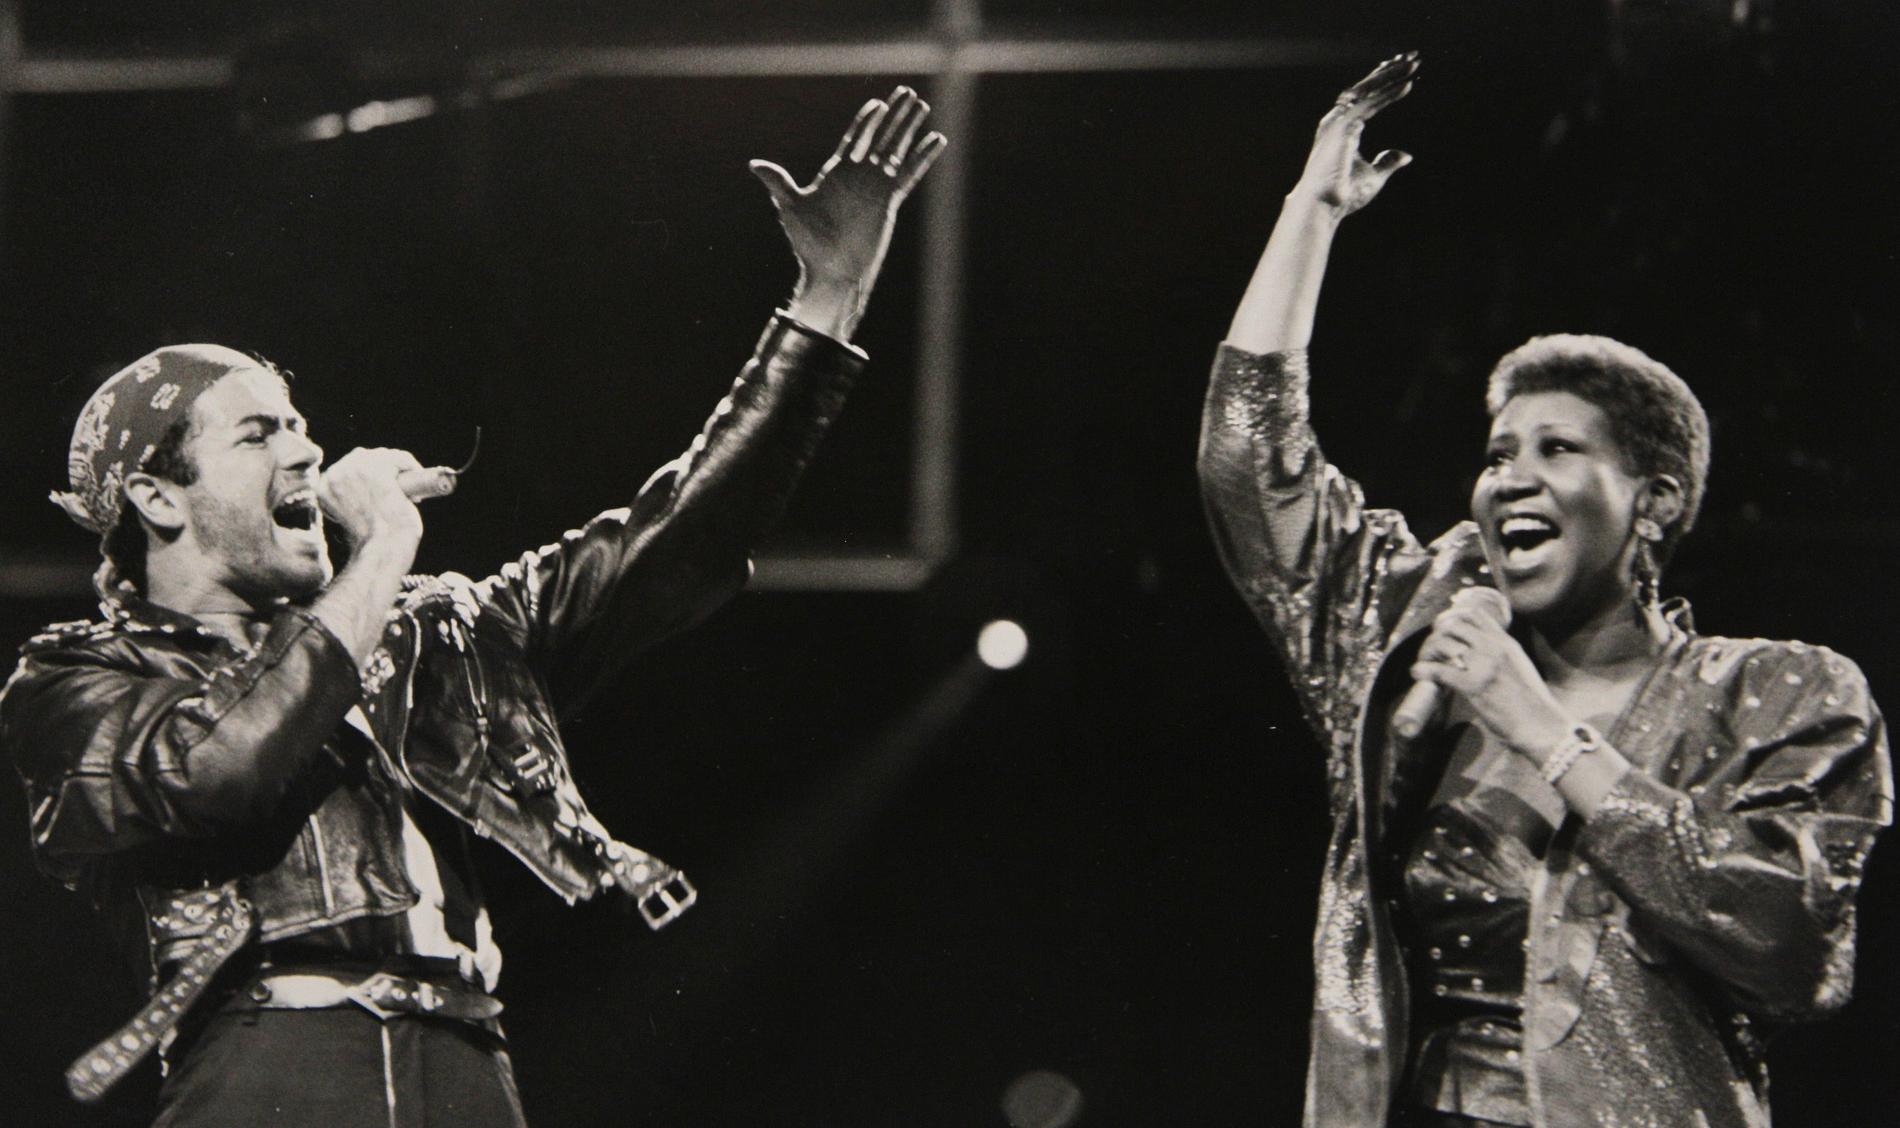 I duett med George Michael under dennes ”Faith world tour” den 30 augusti 1988.